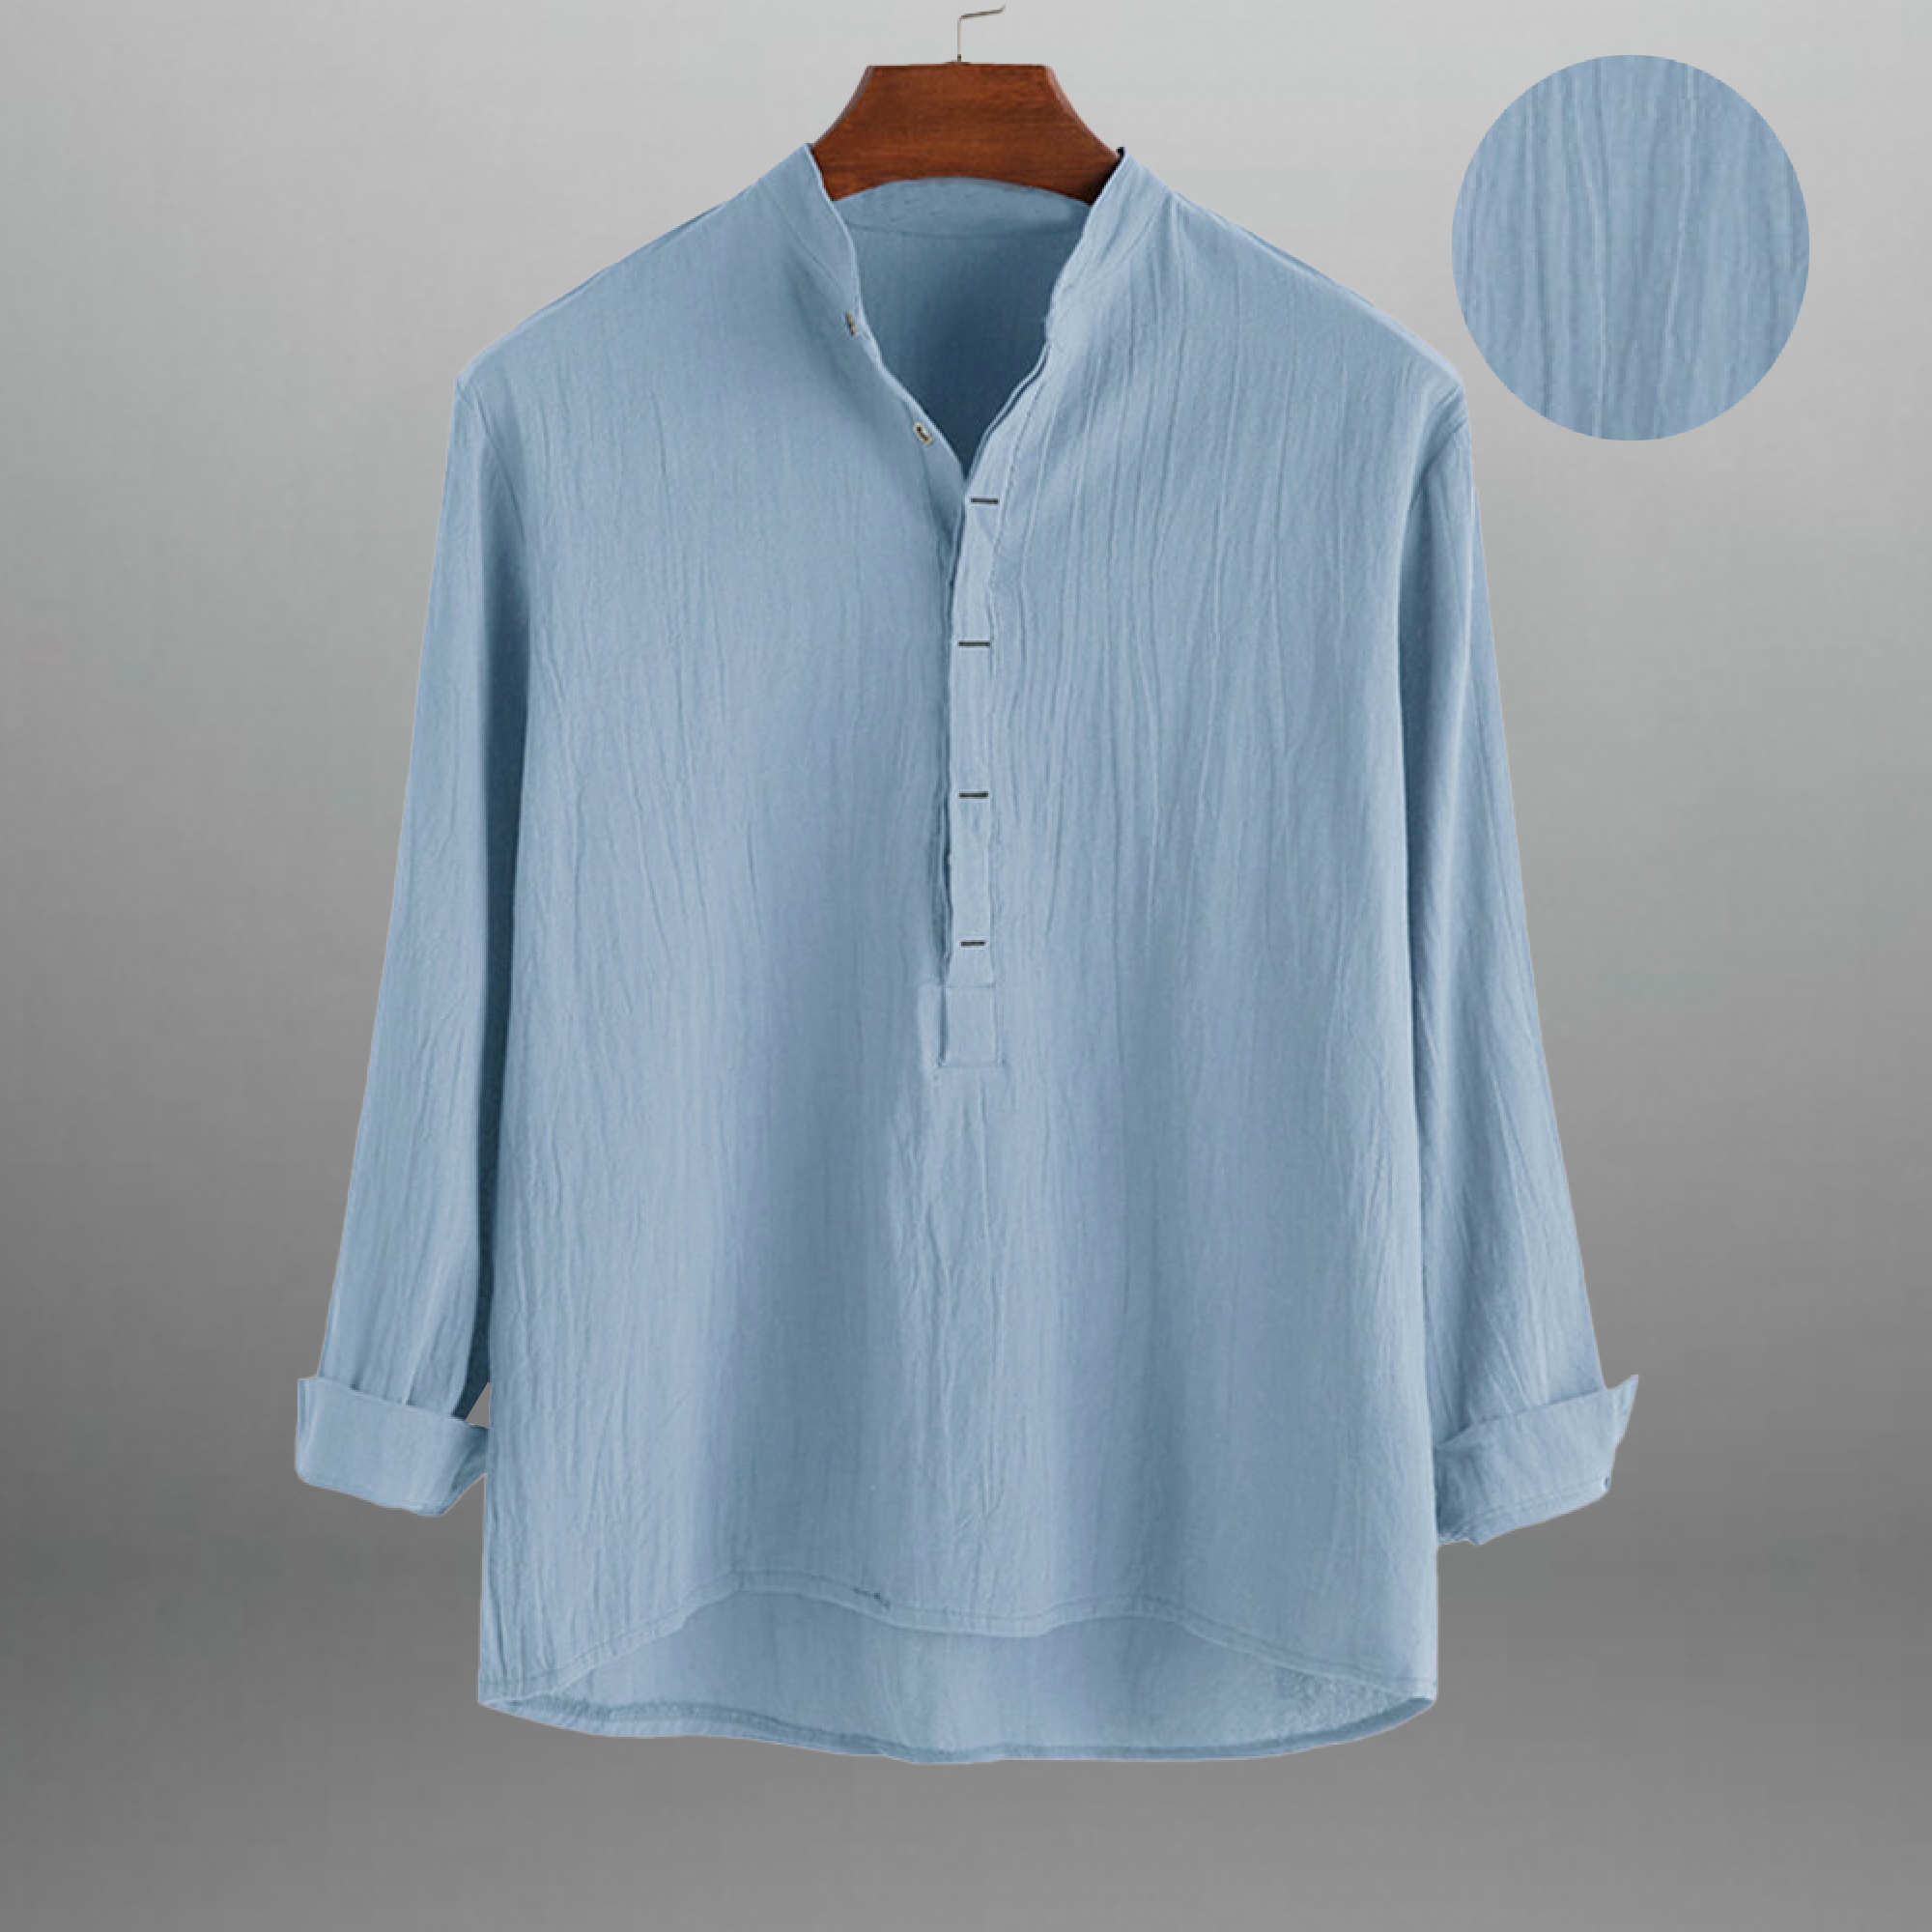 Men's Light Blue T-shirt style textured shirt-RMS025